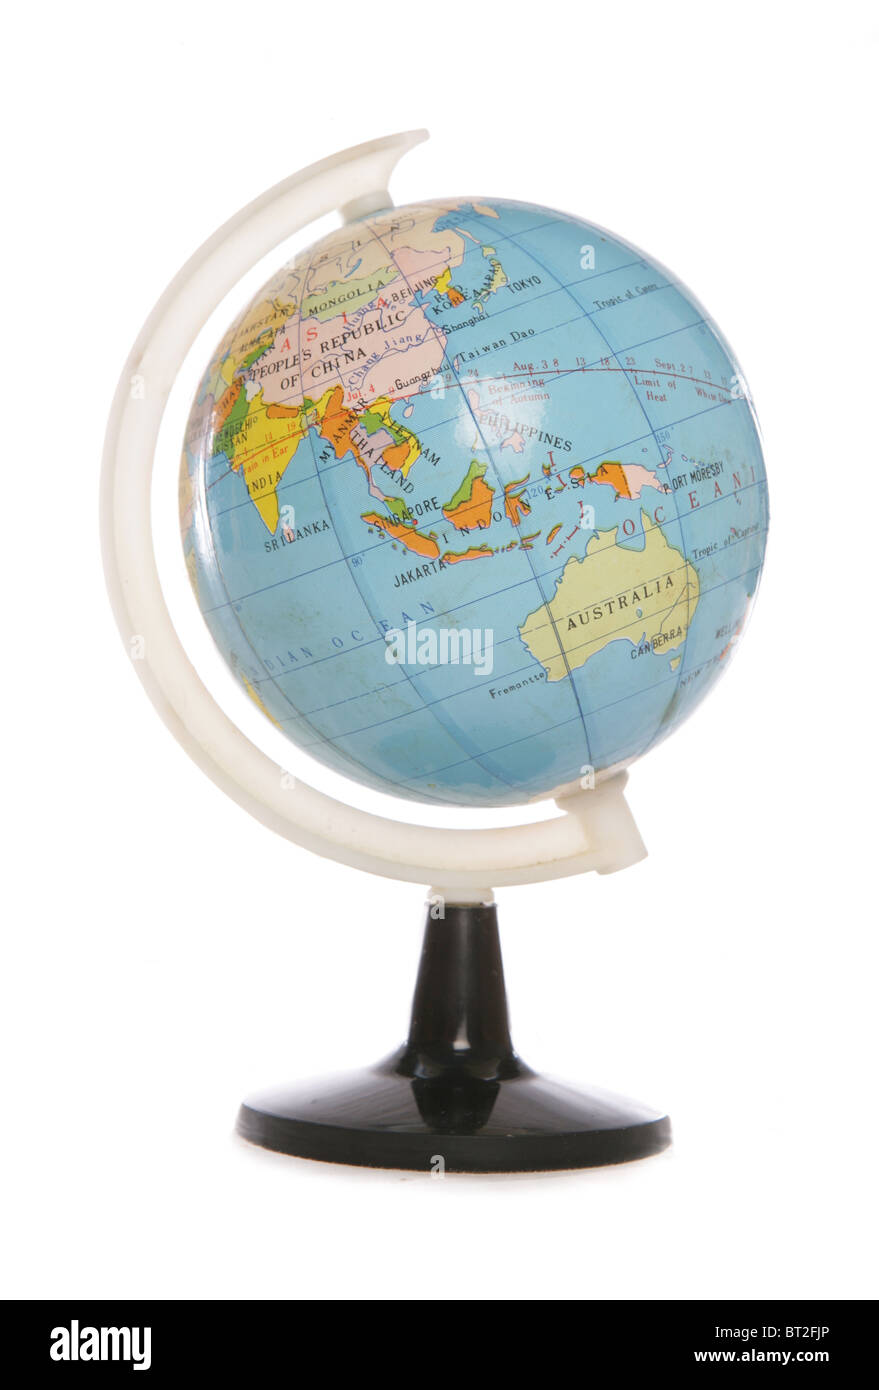 Miniature world globe studio cutout Stock Photo